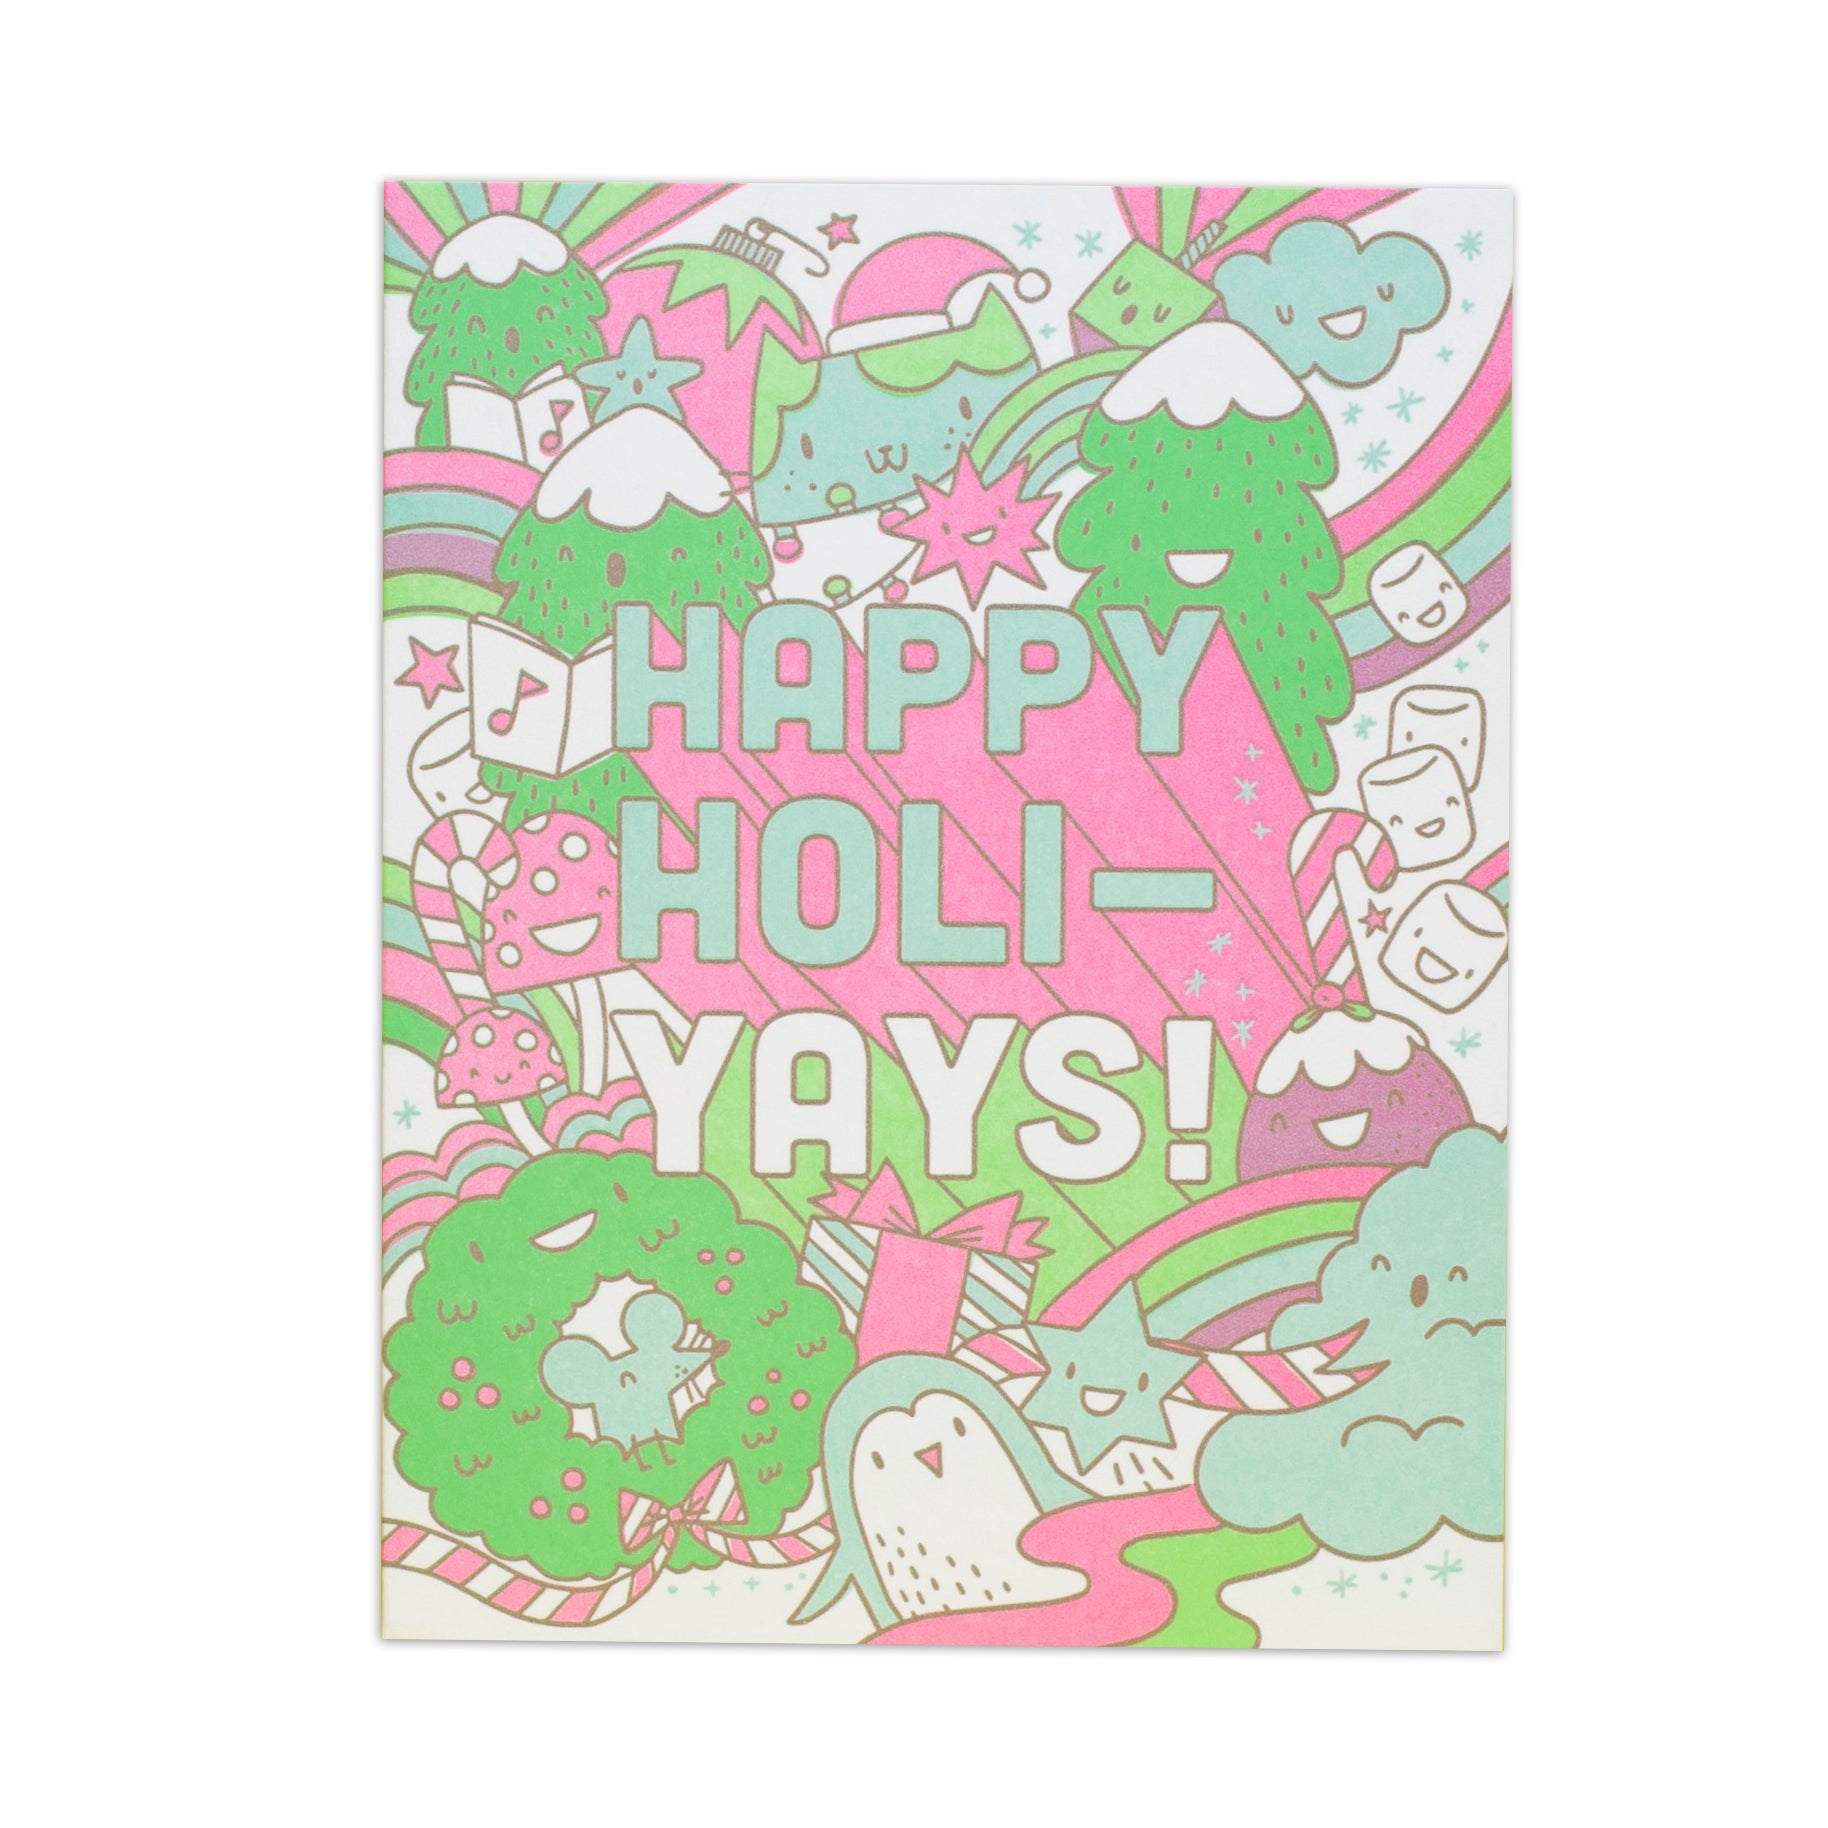 Happy Holi-Yays! Letterpress Holiday Card